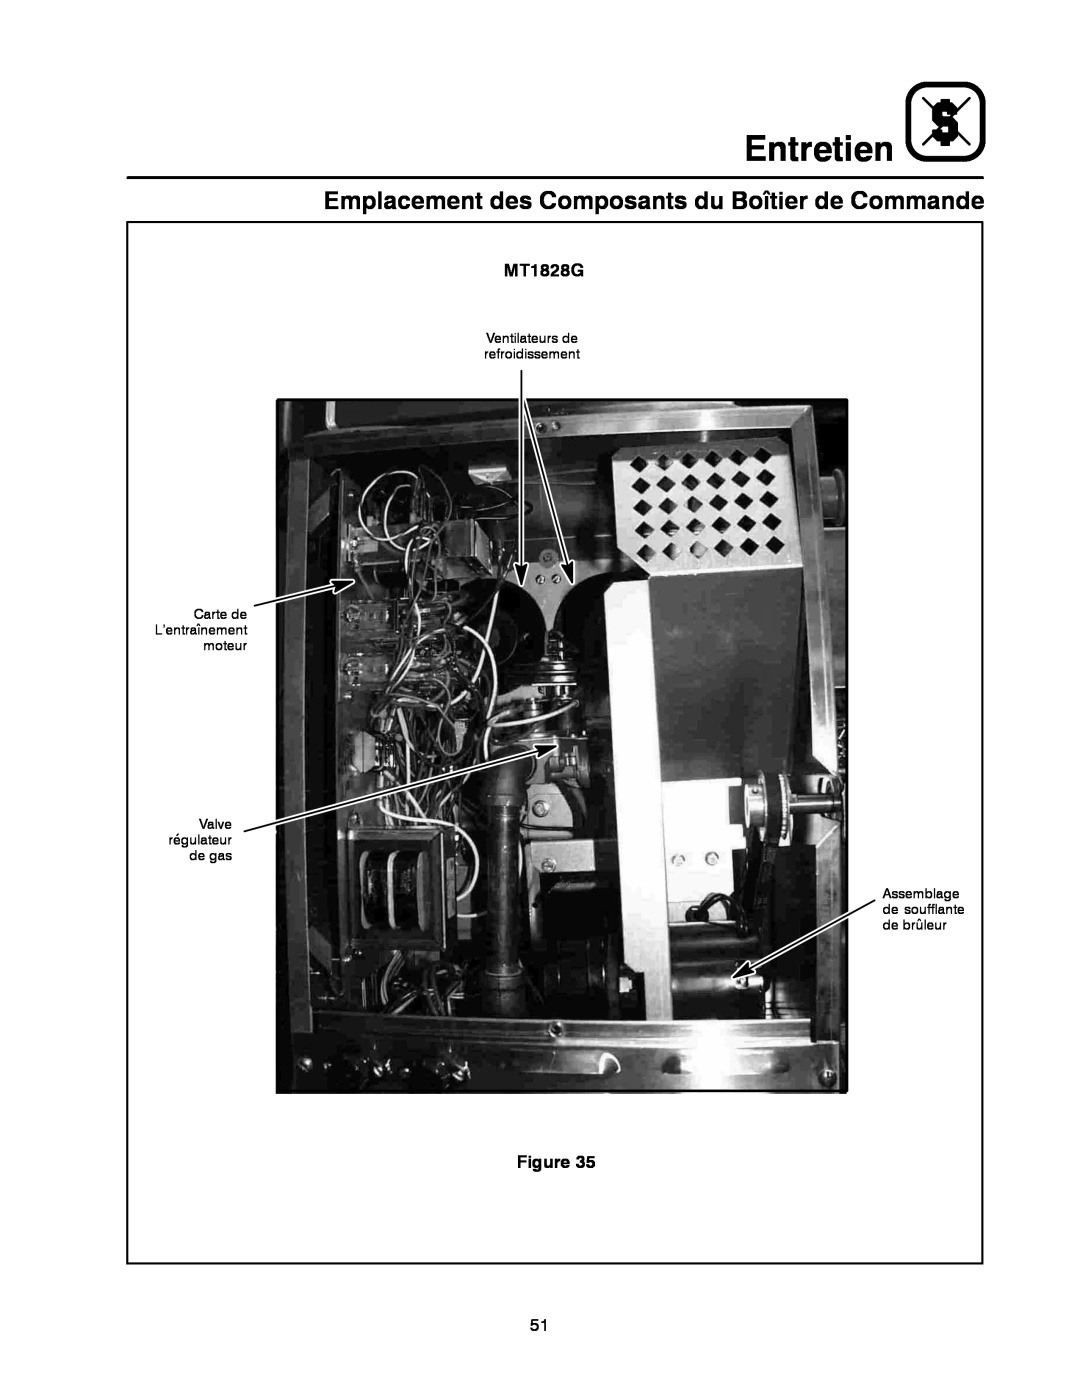 Blodgett MT1828E manual Emplacement des Composants du Boîtier de Commande, Entretien, MT1828G 